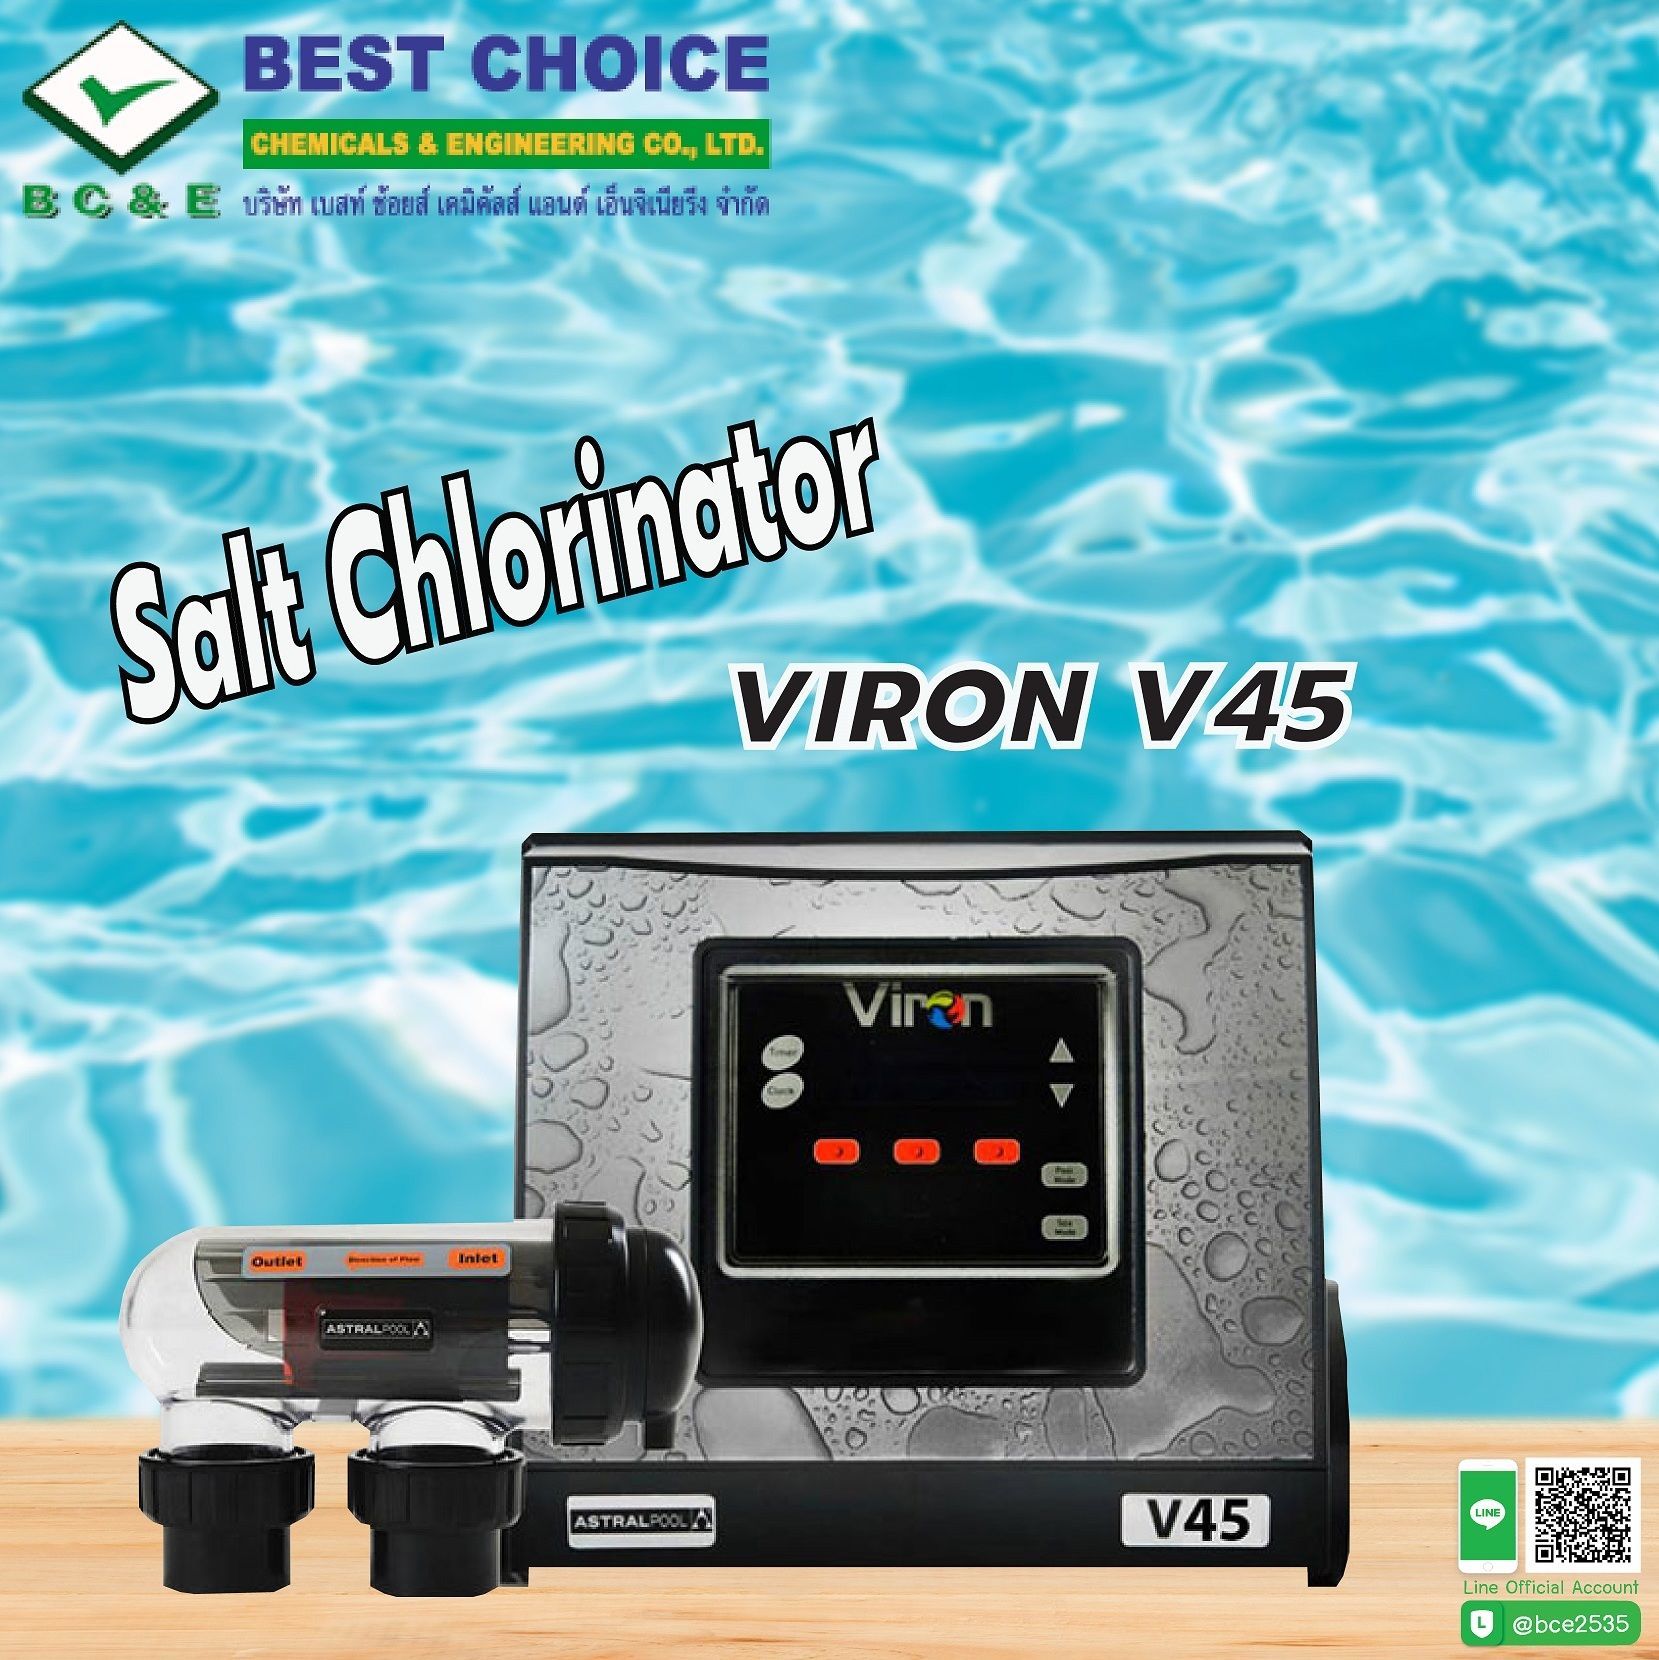 AstralPool เครื่องผลิตคลอรีนจากเกลือ (Salt Chlorinator) รุ่น Viron V45.
กำลังการผลิต 45 g/h เหมาะสำหรัับสระว่ายน้ำขนาด 105-170 คิว